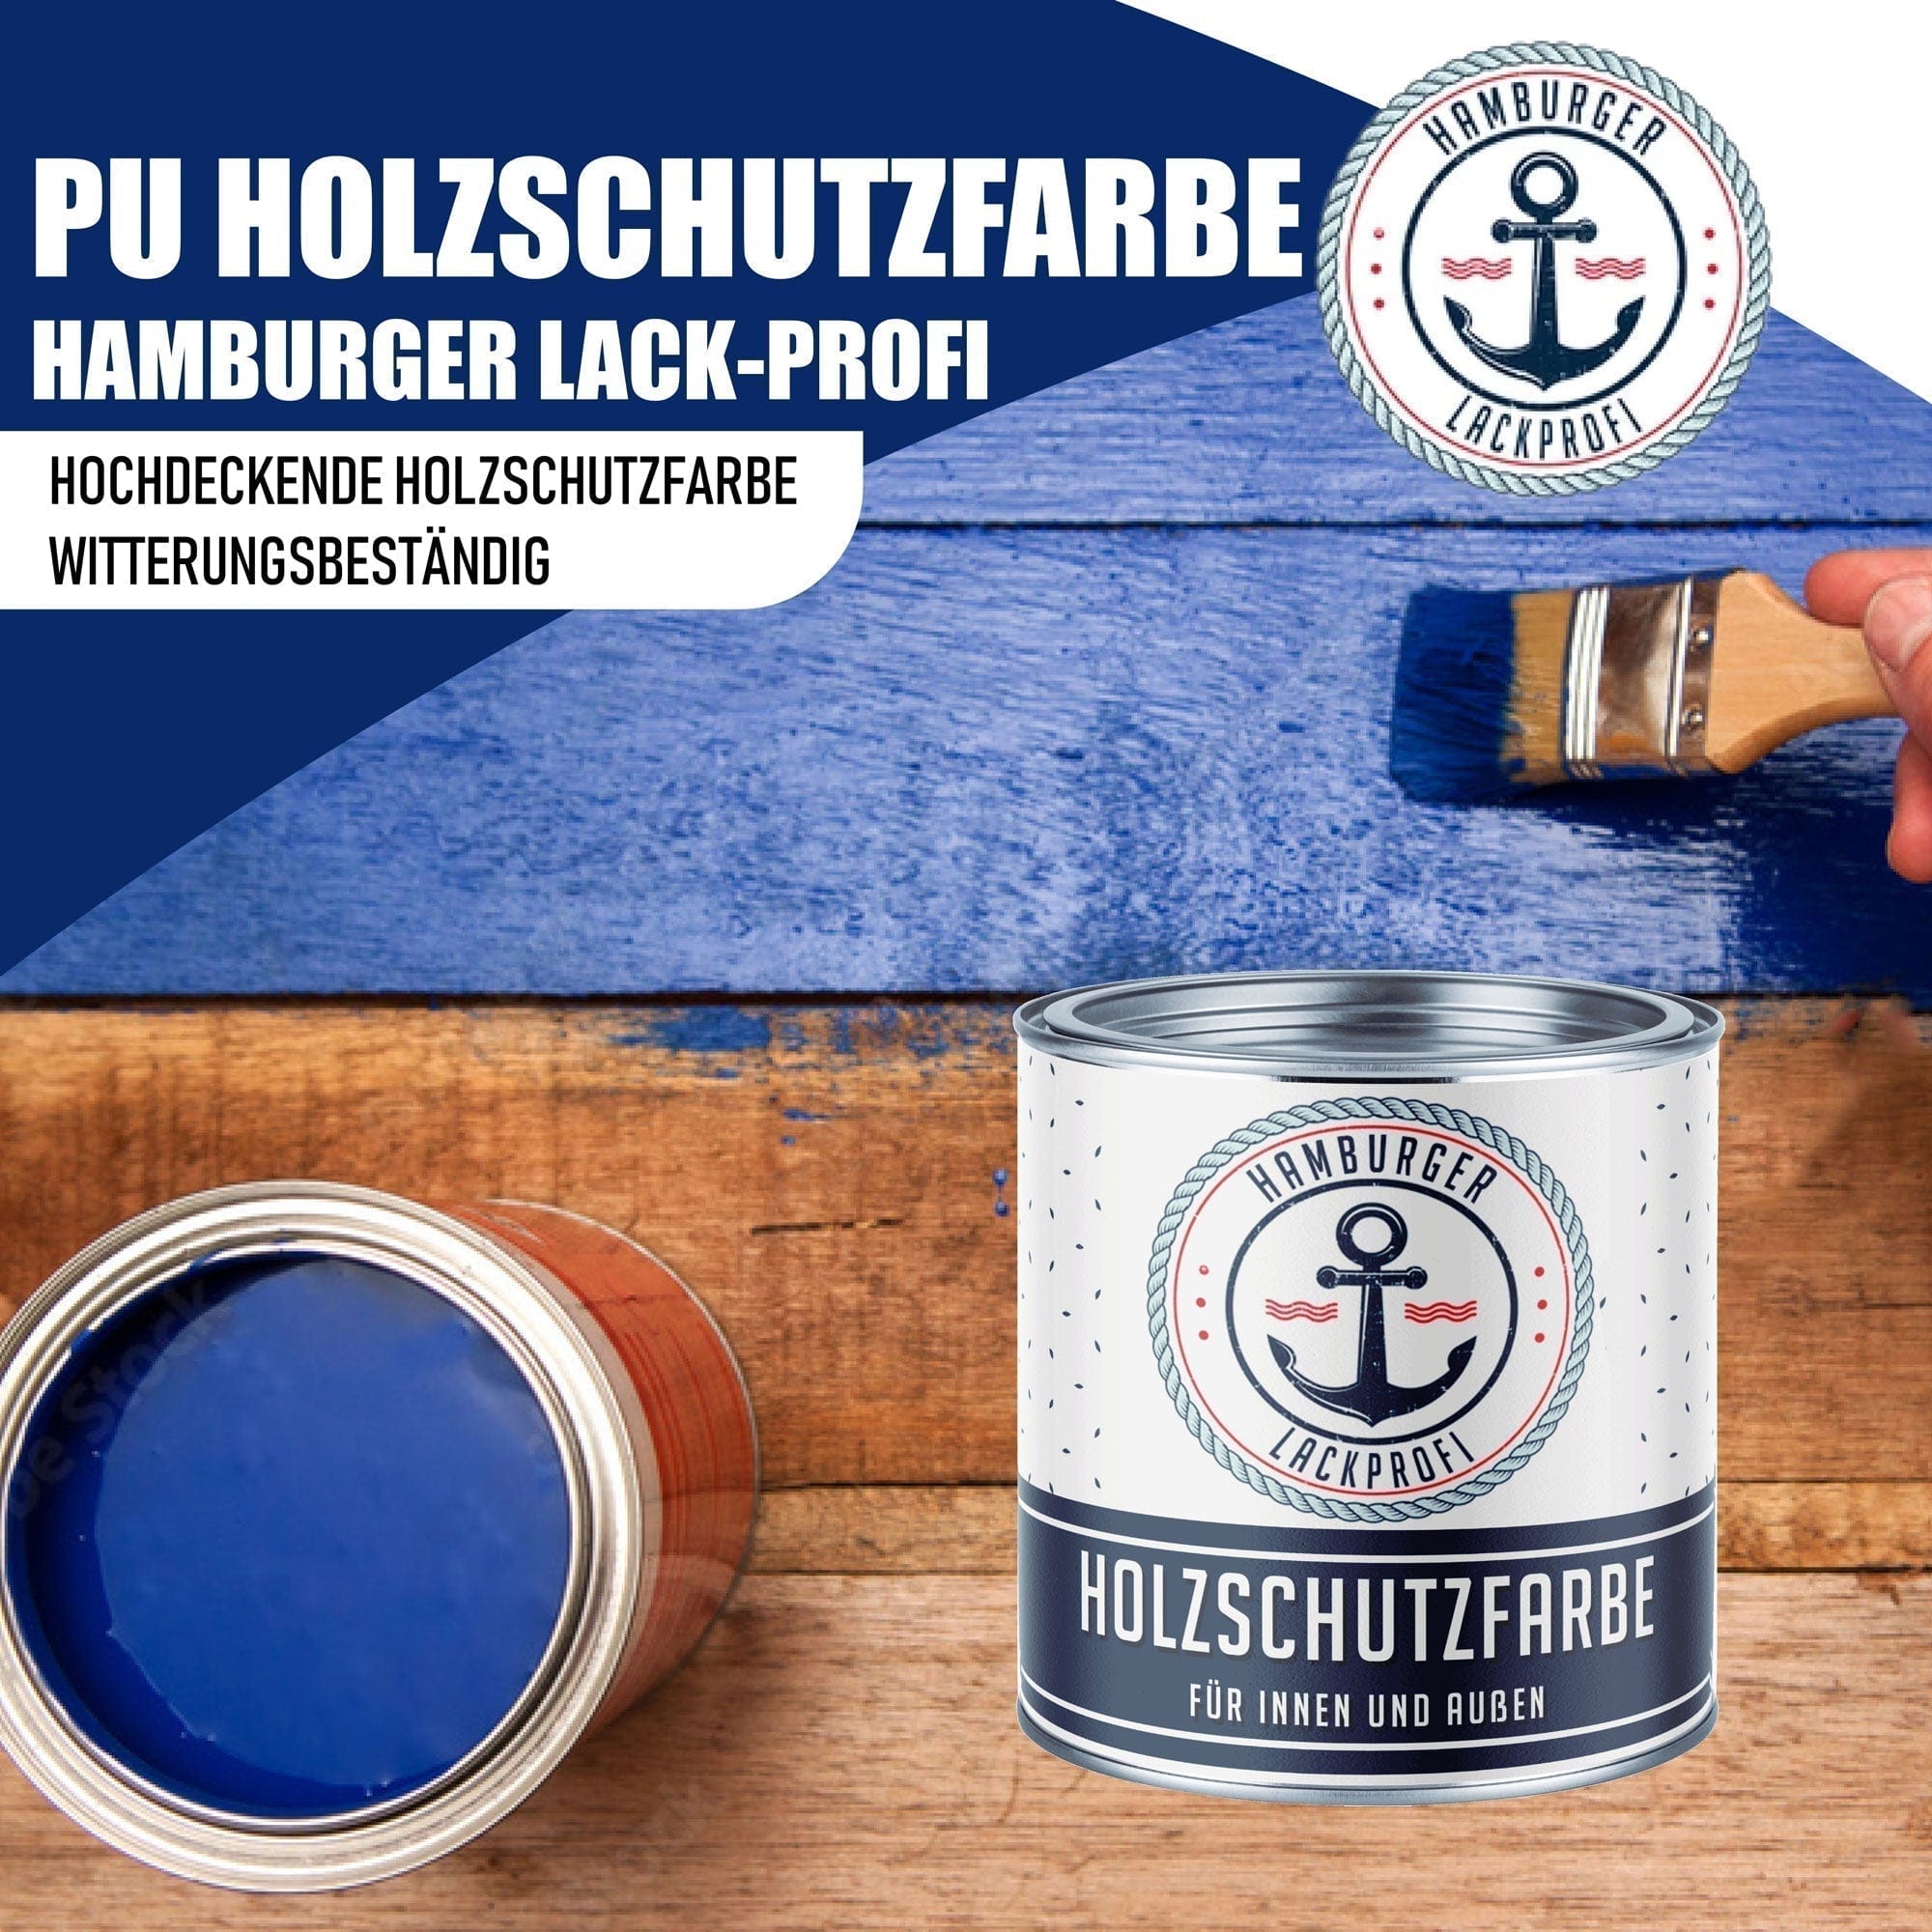 Hamburger Lack-Profi Lacke & Beschichtungen PU Holzschutzfarbe RAL 8003 Lehmbraun - Wetterschutzfarbe